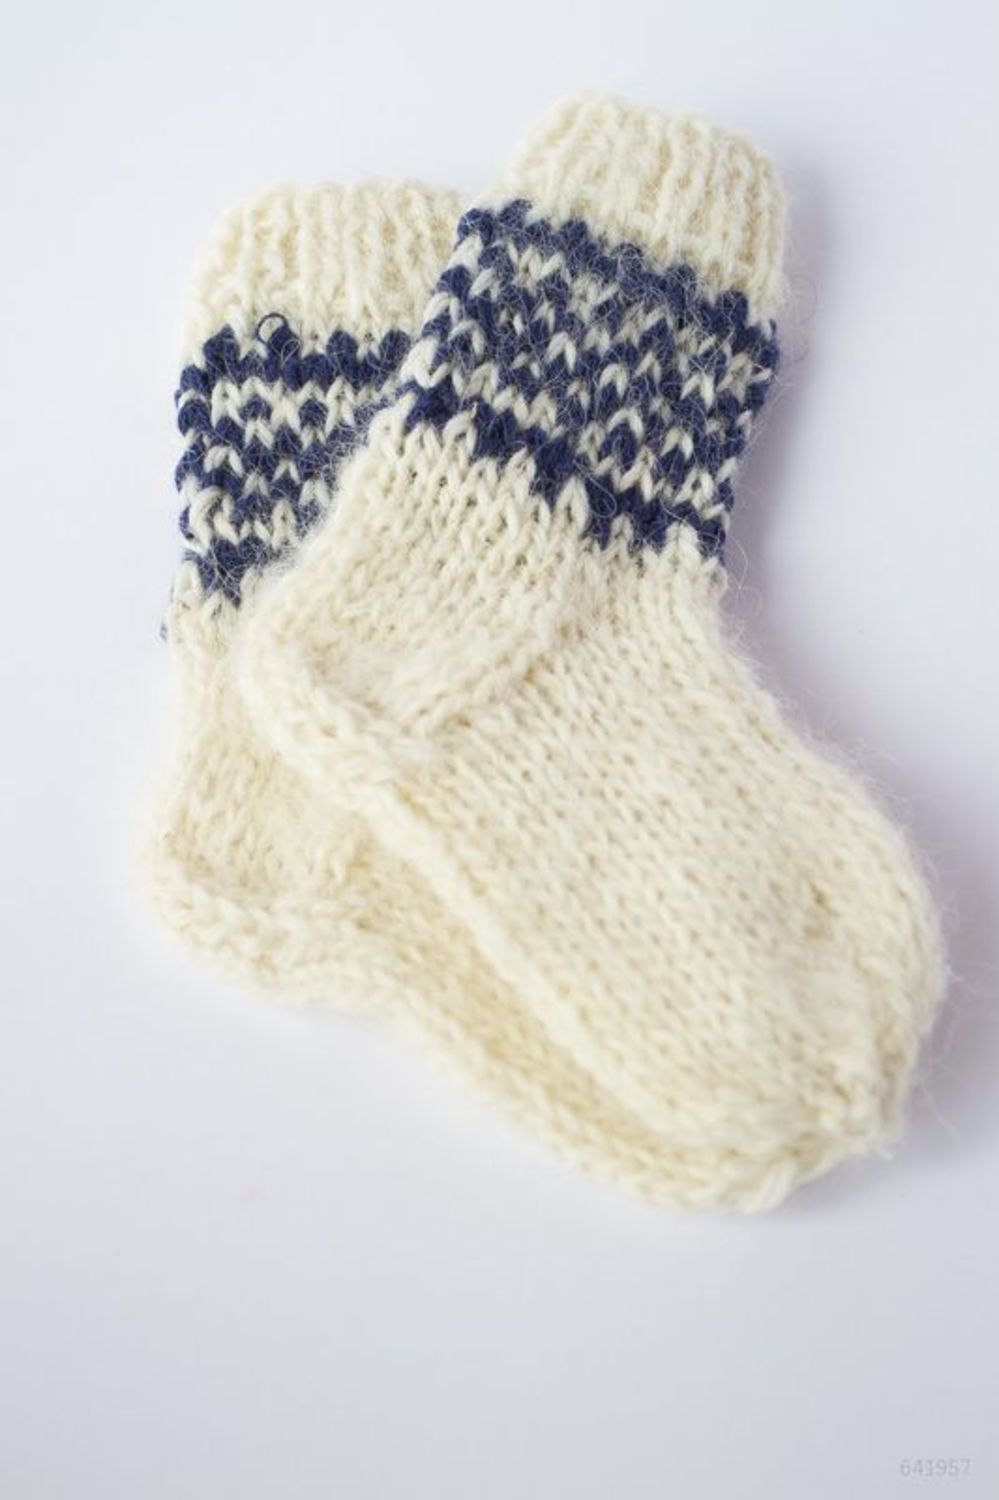 Children's socks made of wool photo 3